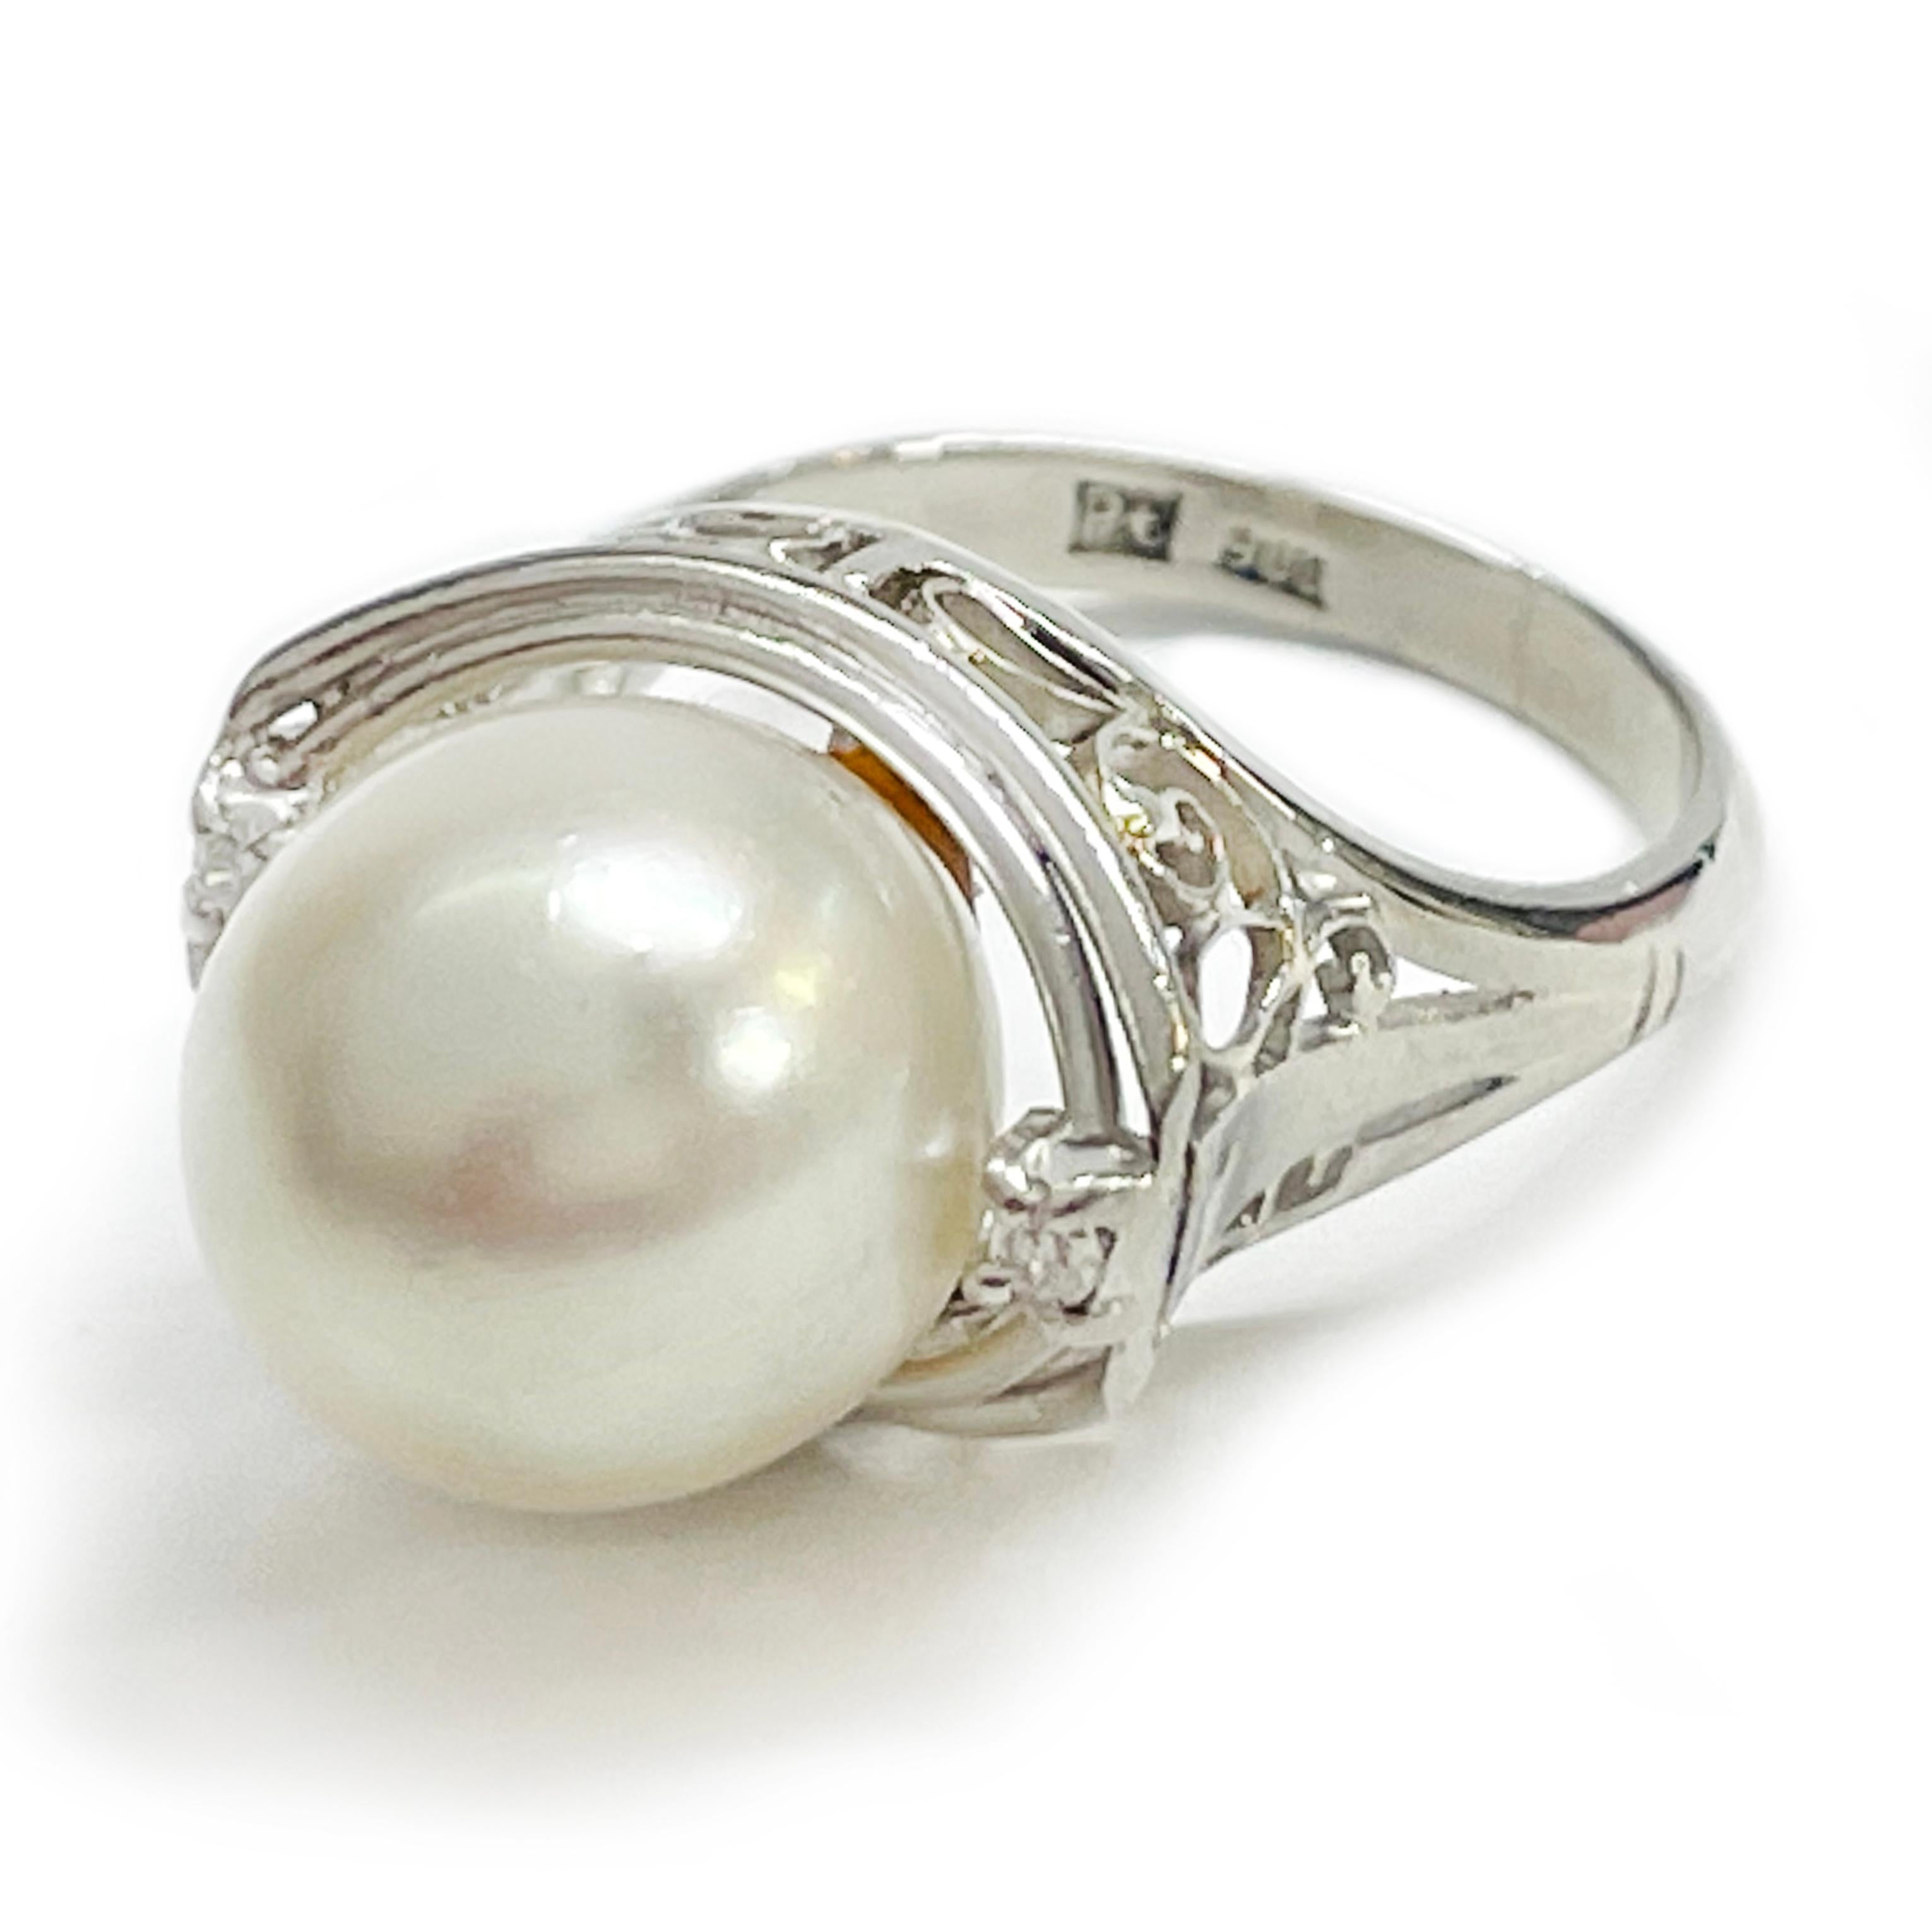 Bague en platine avec perles et diamants. La bague présente une perle centrale blanche Ayoka de 10 mm flanquée d'un diamant rond melee serti sur chaque côté. La perle est blanche et crème avec un bon lustre. Les diamants ont un poids total de 0,03